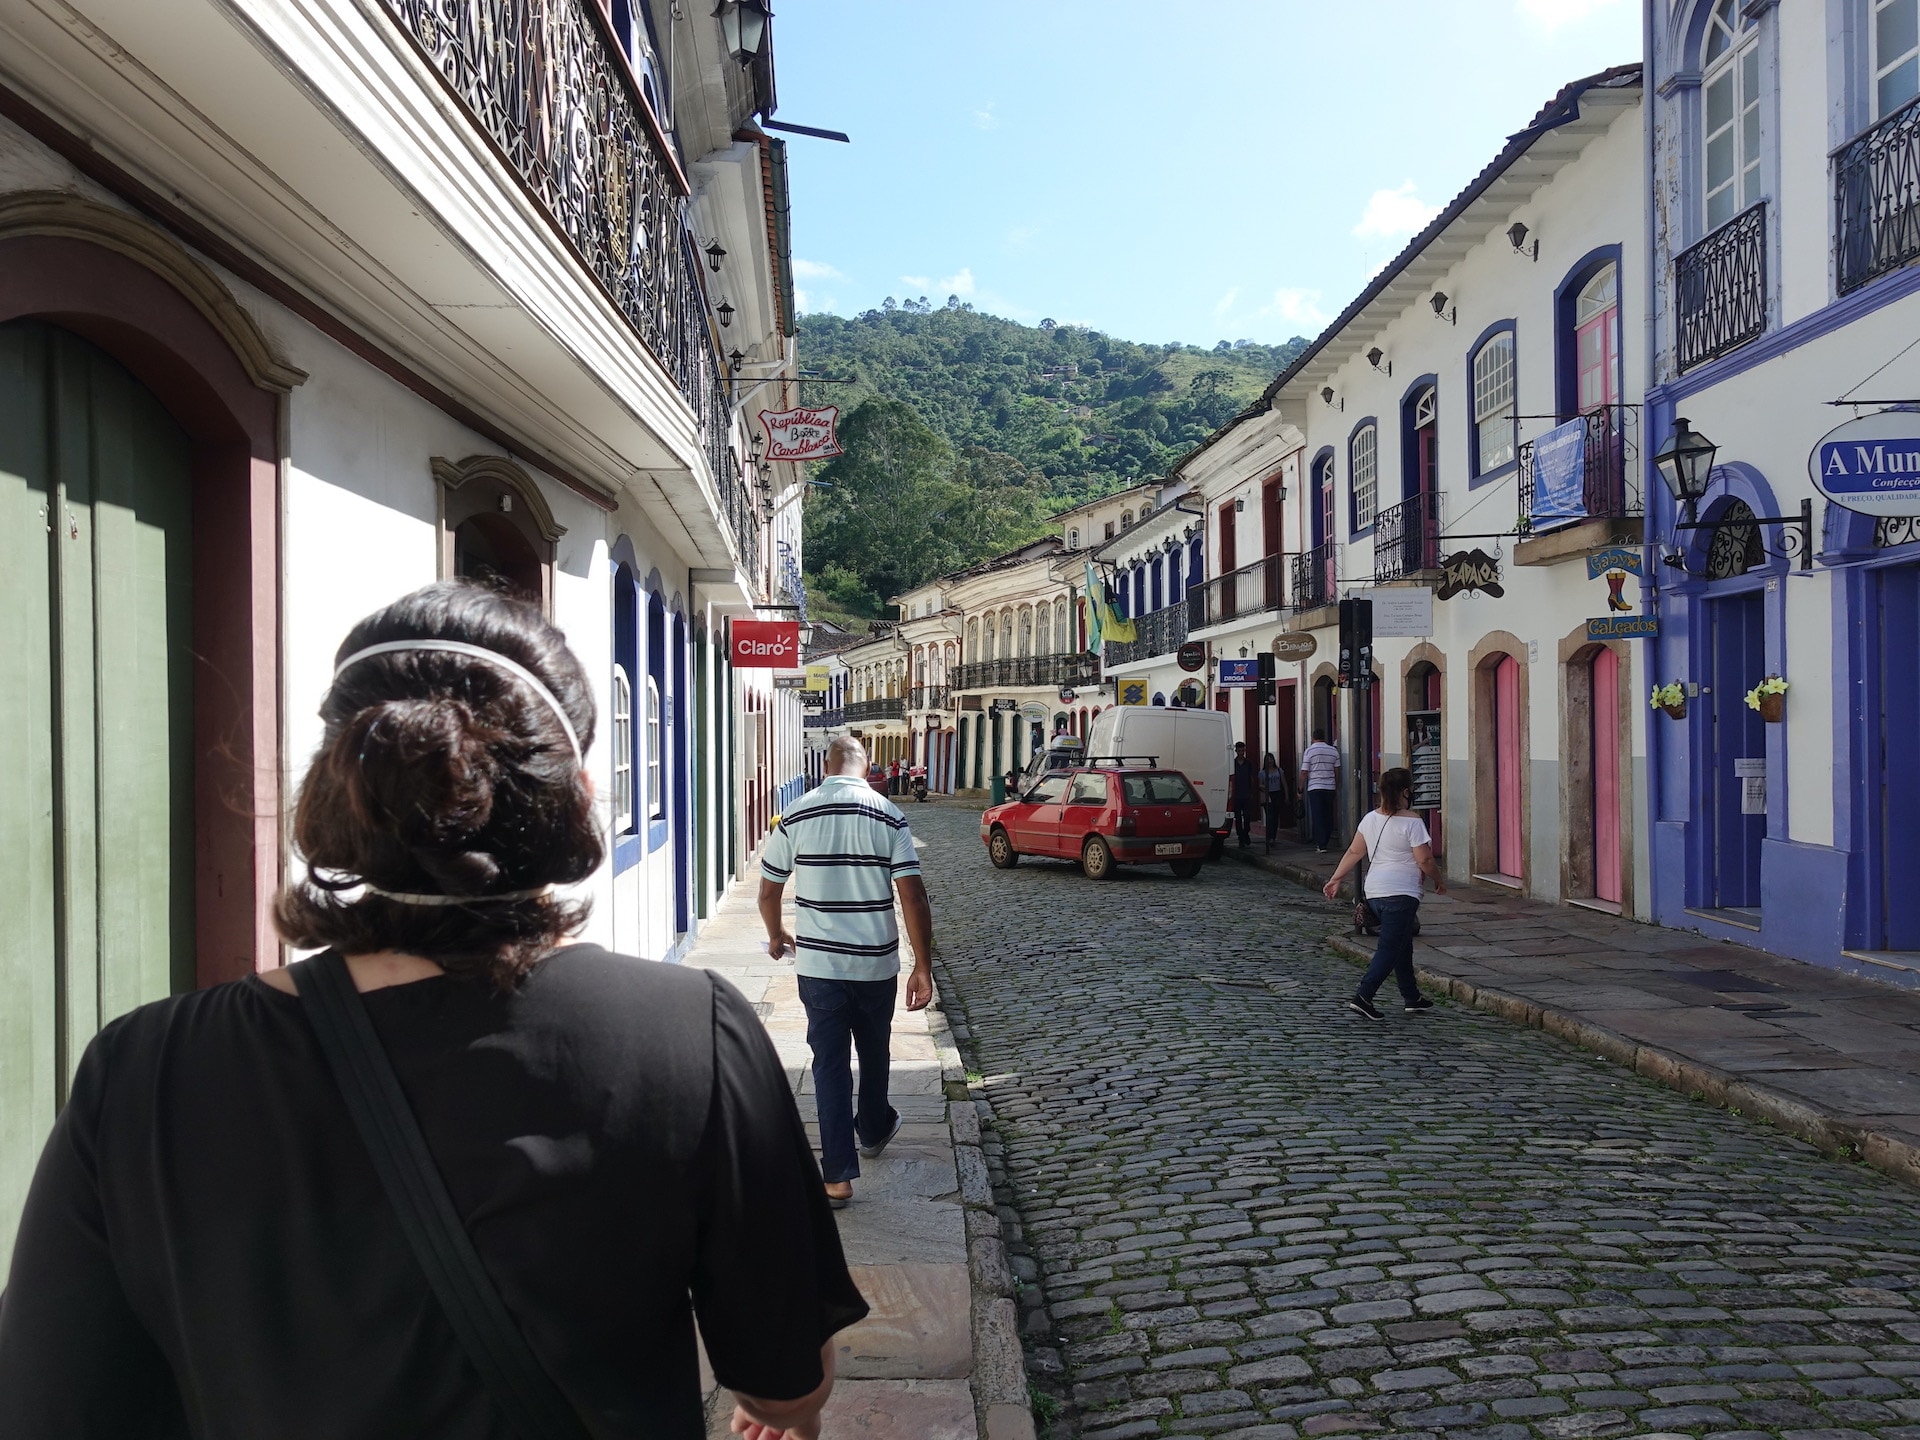 Vista de uma rua em Ouro Preto, com calçamento de pedra, prédios históricos dos dois lados e pessoas e carros — em primeiro plano, à esquerda, mulher de cabelo curto e roupa preta de costas.